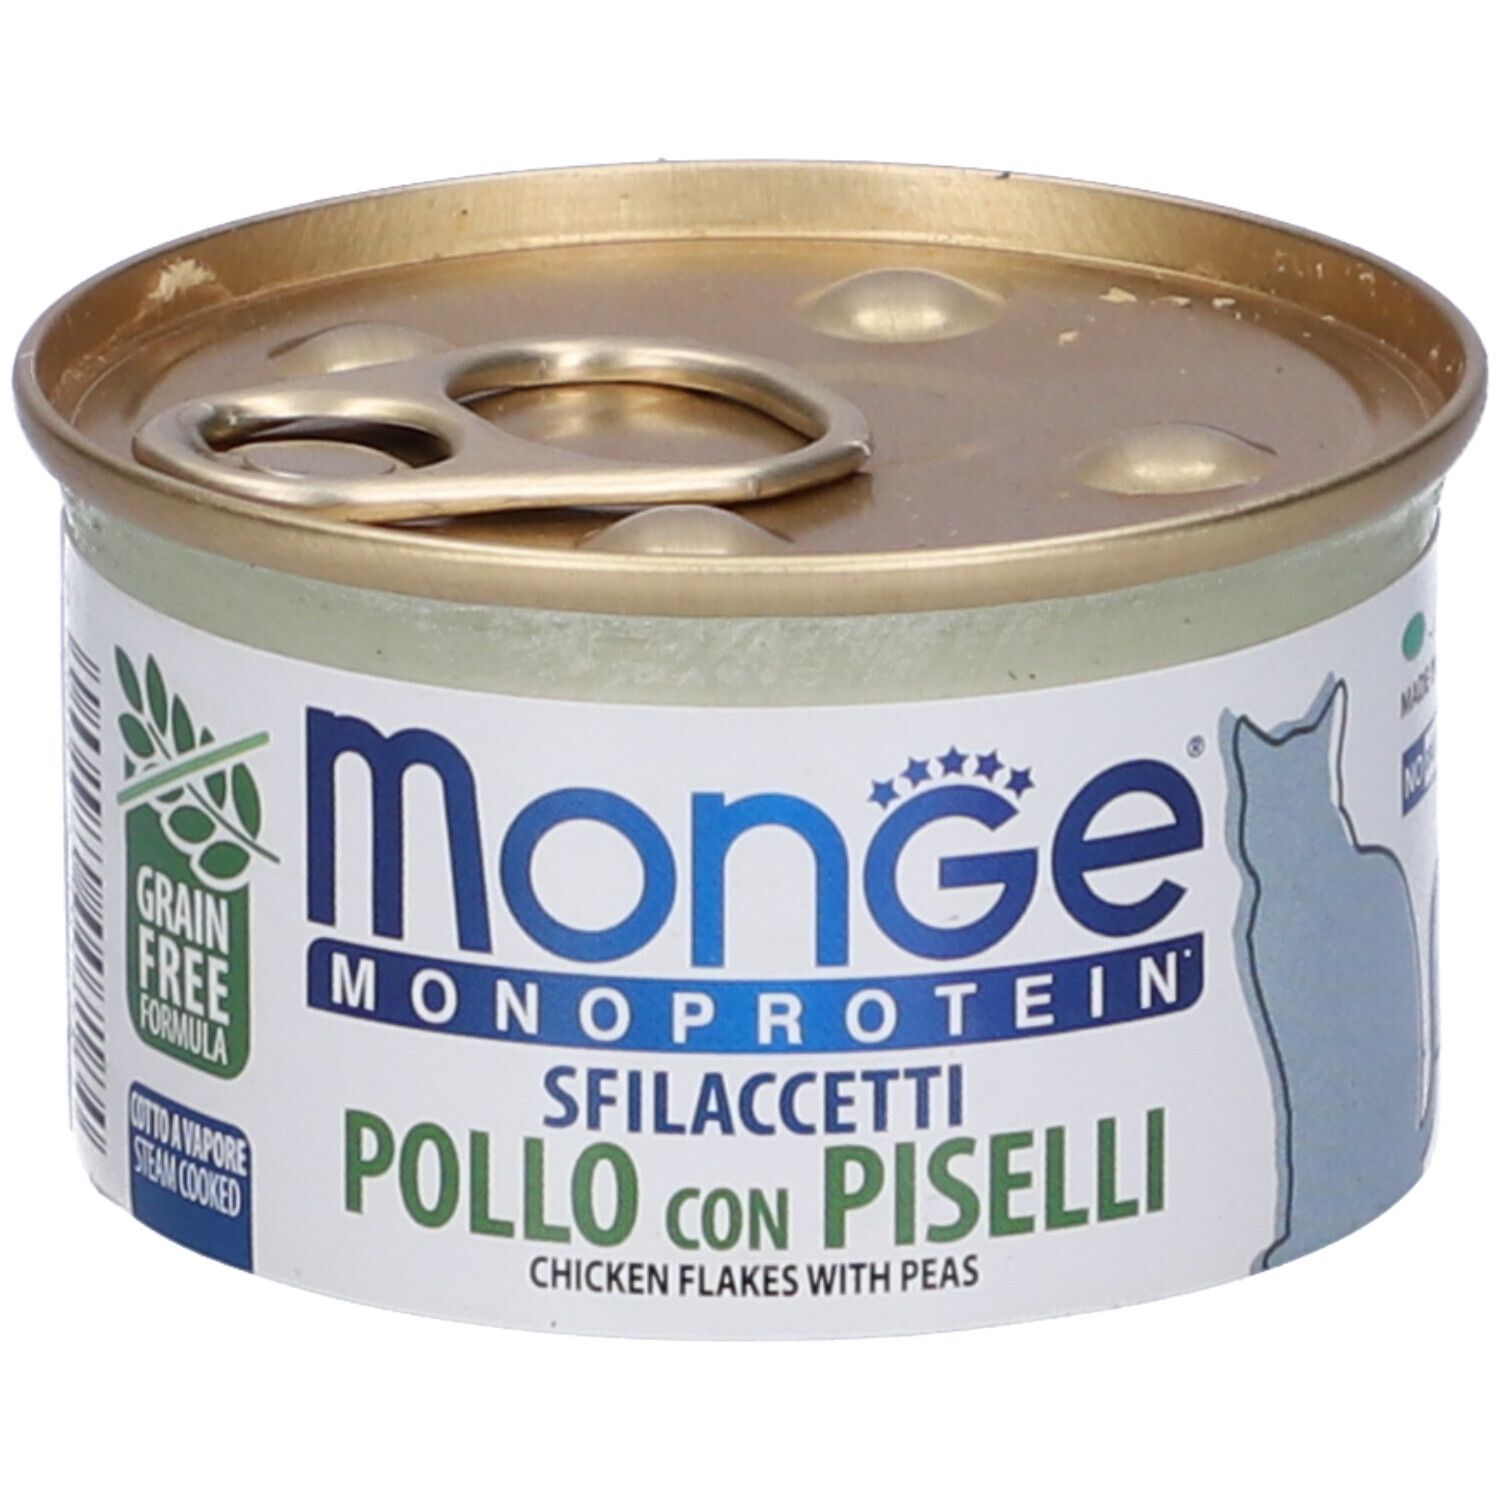 Image of Monge Monoprotein Sfilaccetti Pollo con Piselli